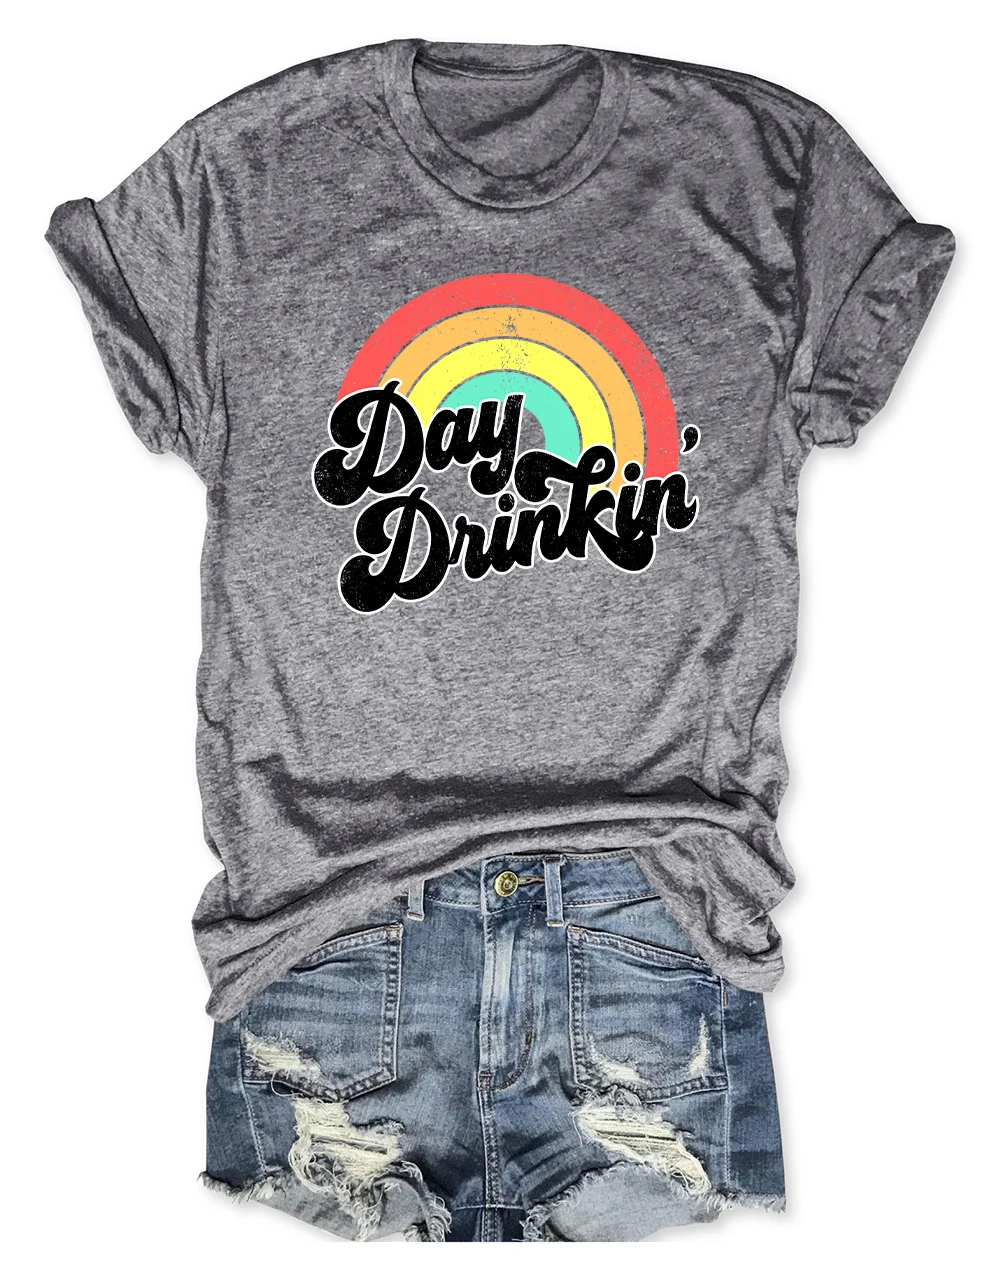 Day Drinkin' T-Shirt